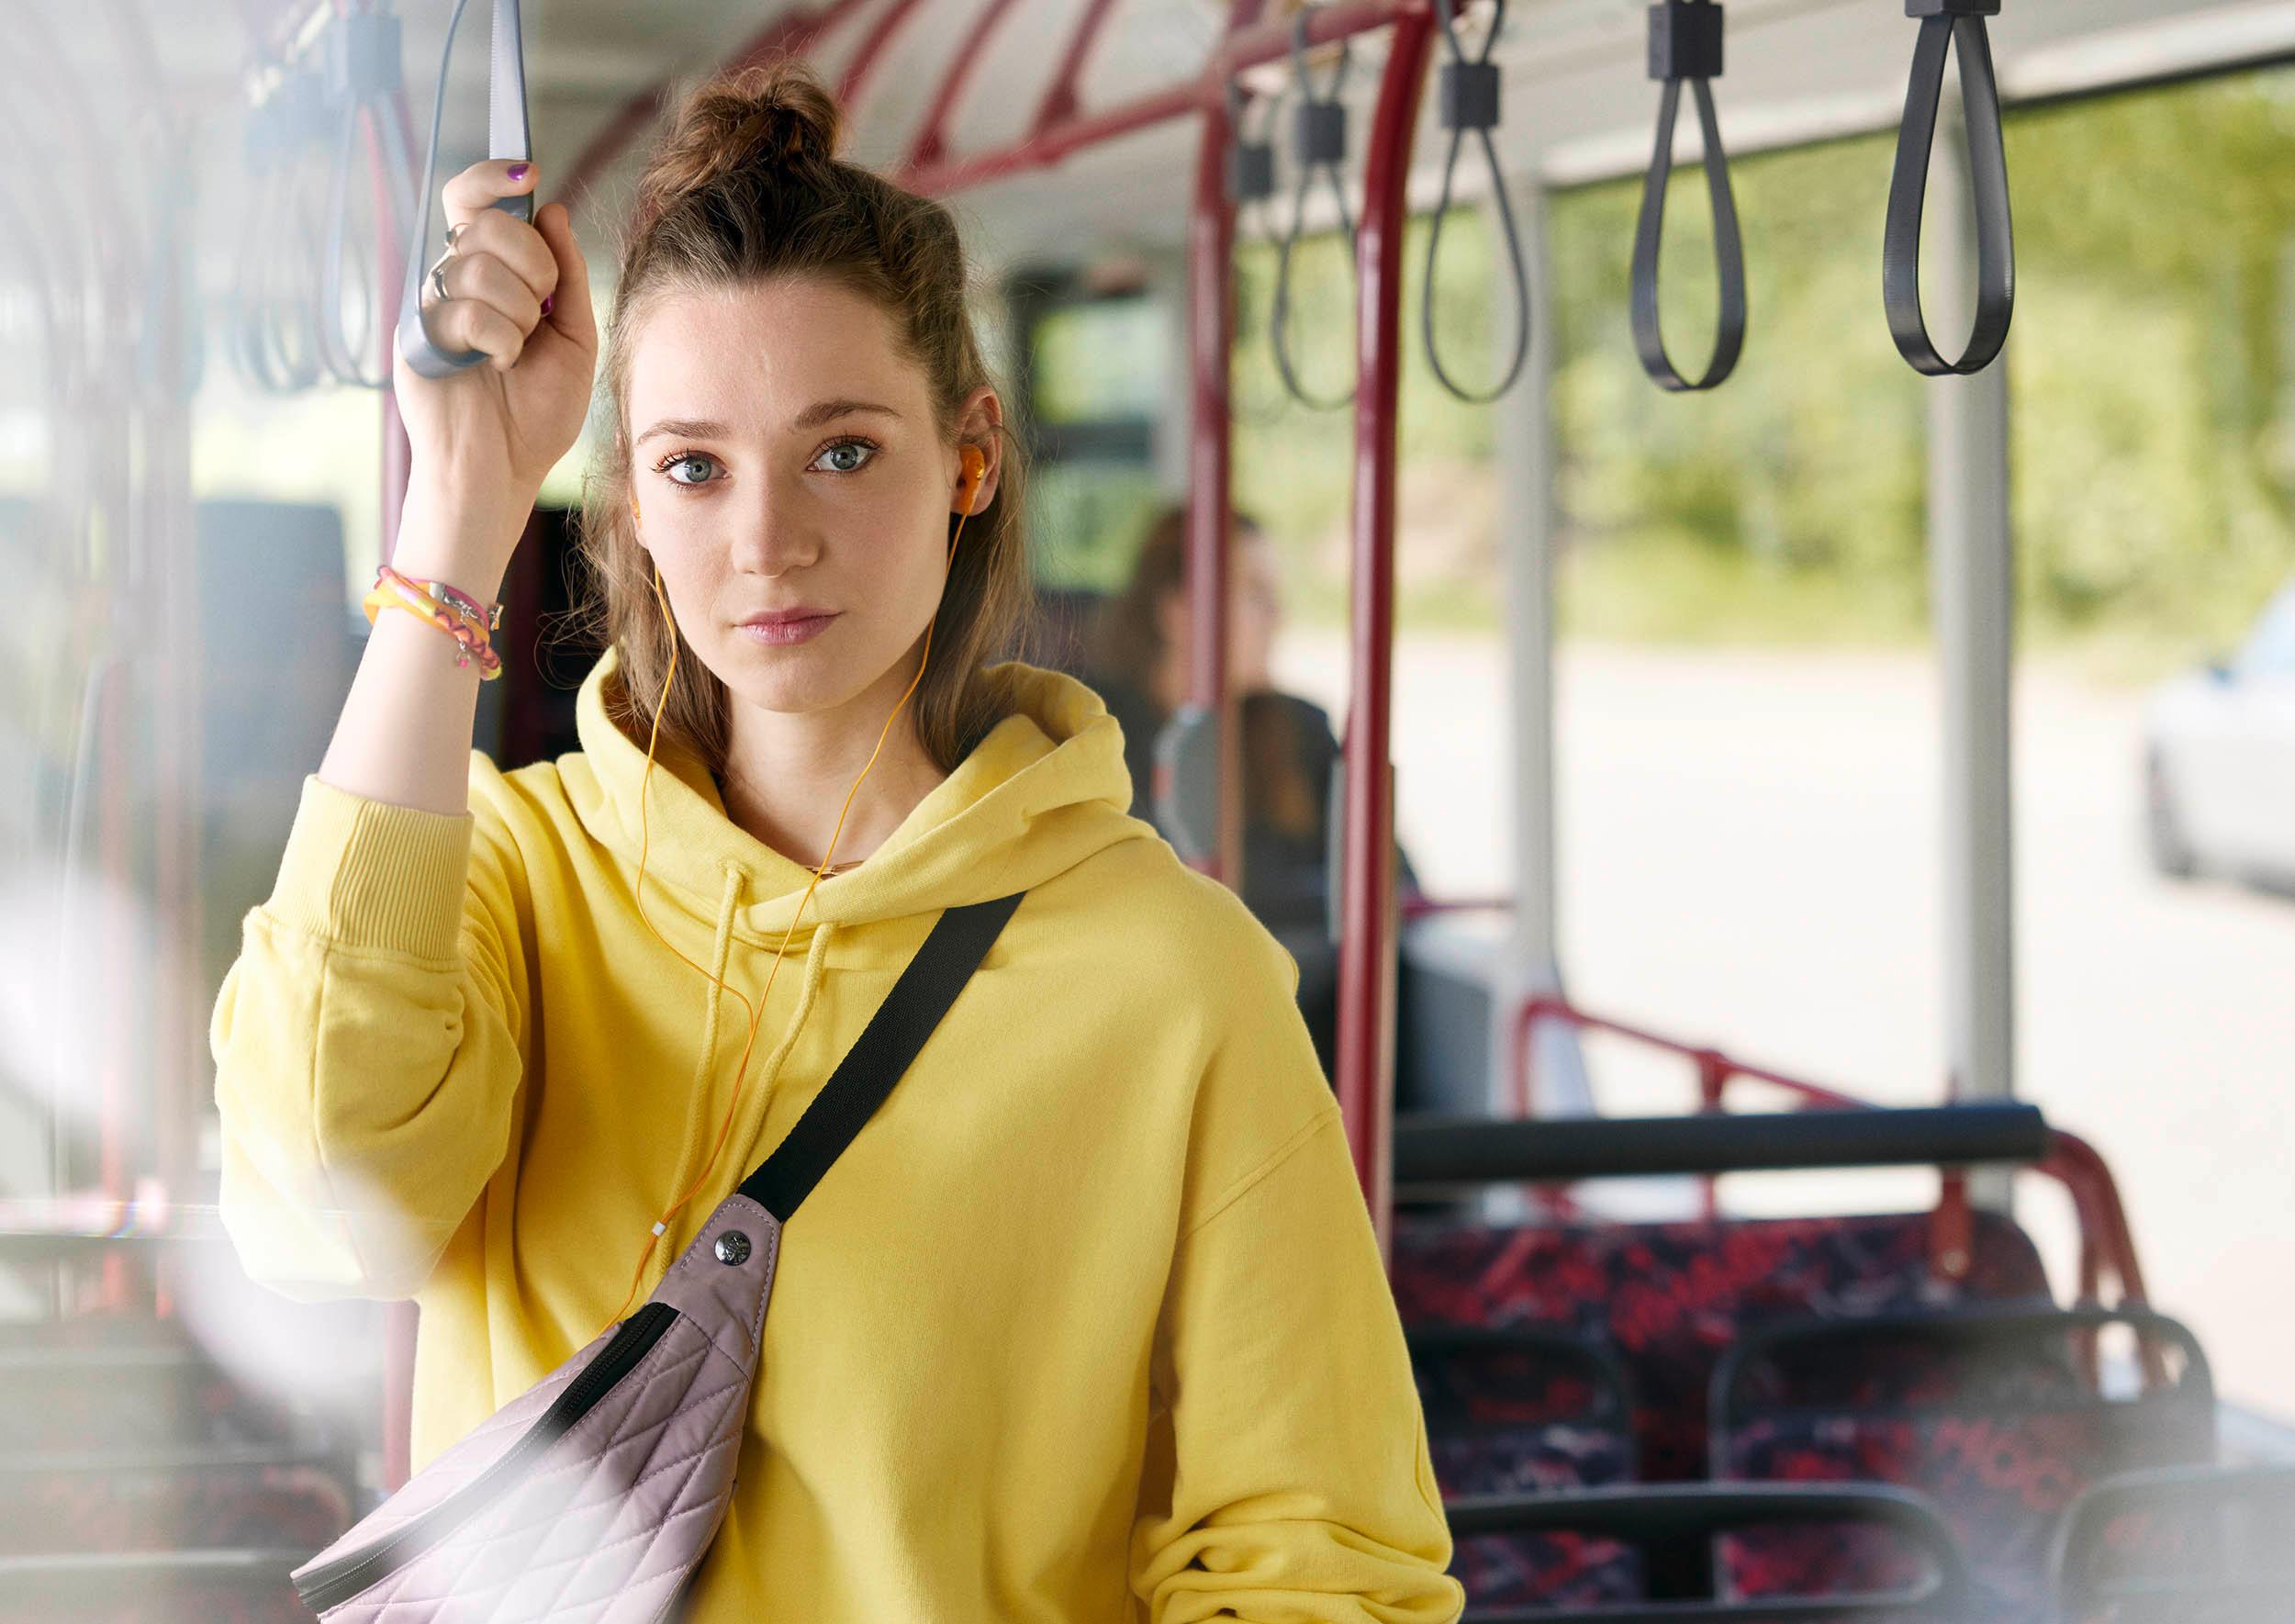 Foto: Junge Frau hält sich im Bus stehend an Haltegriff fest, Frontalaufnahme